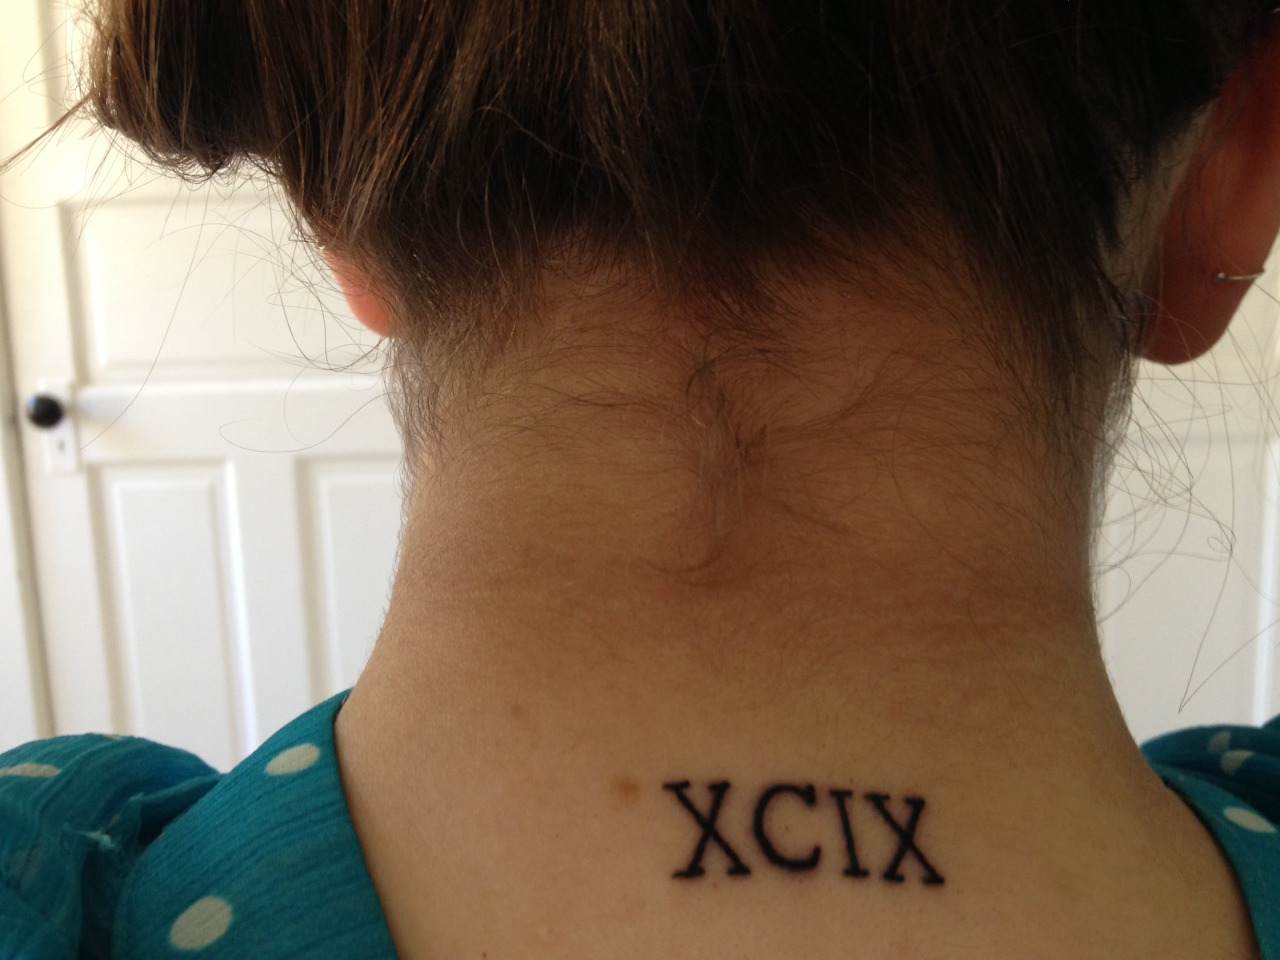 Xcix roman numerals tattoo